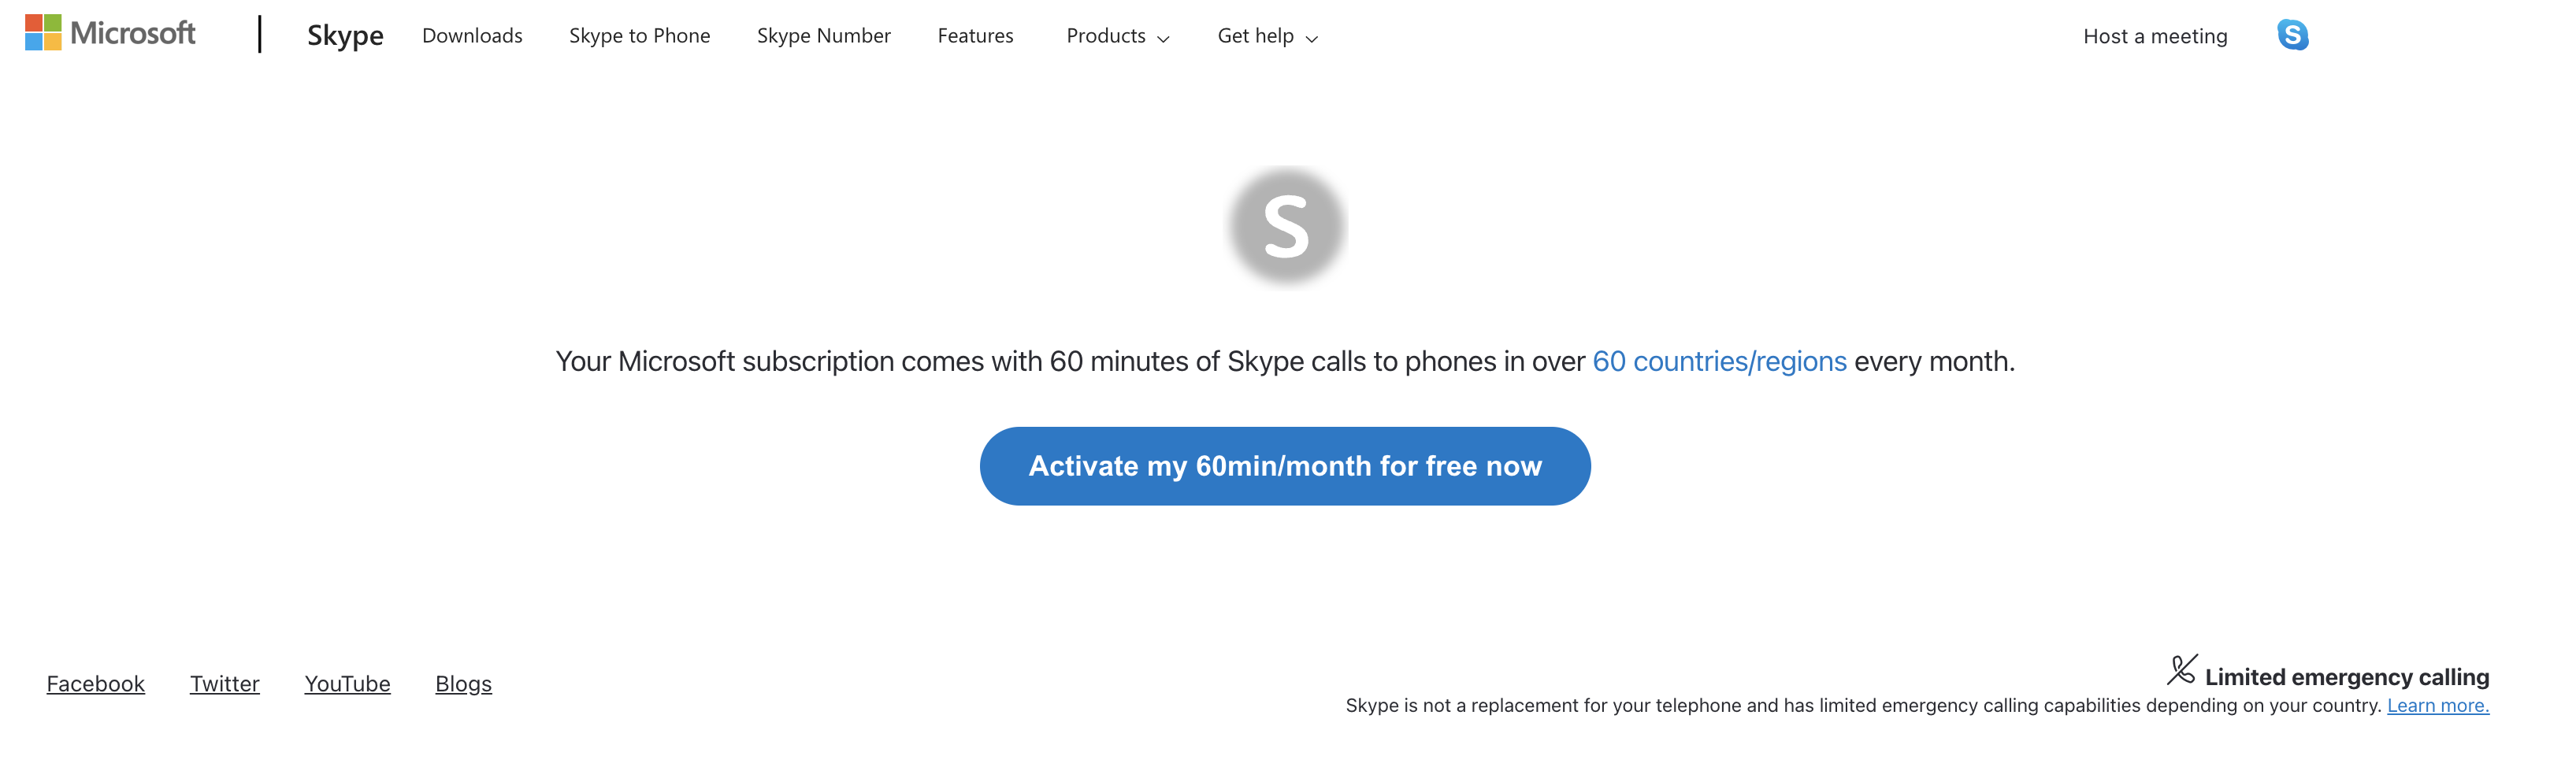 Página da Web para ativar gratuitamente 60 minutos com o Skype